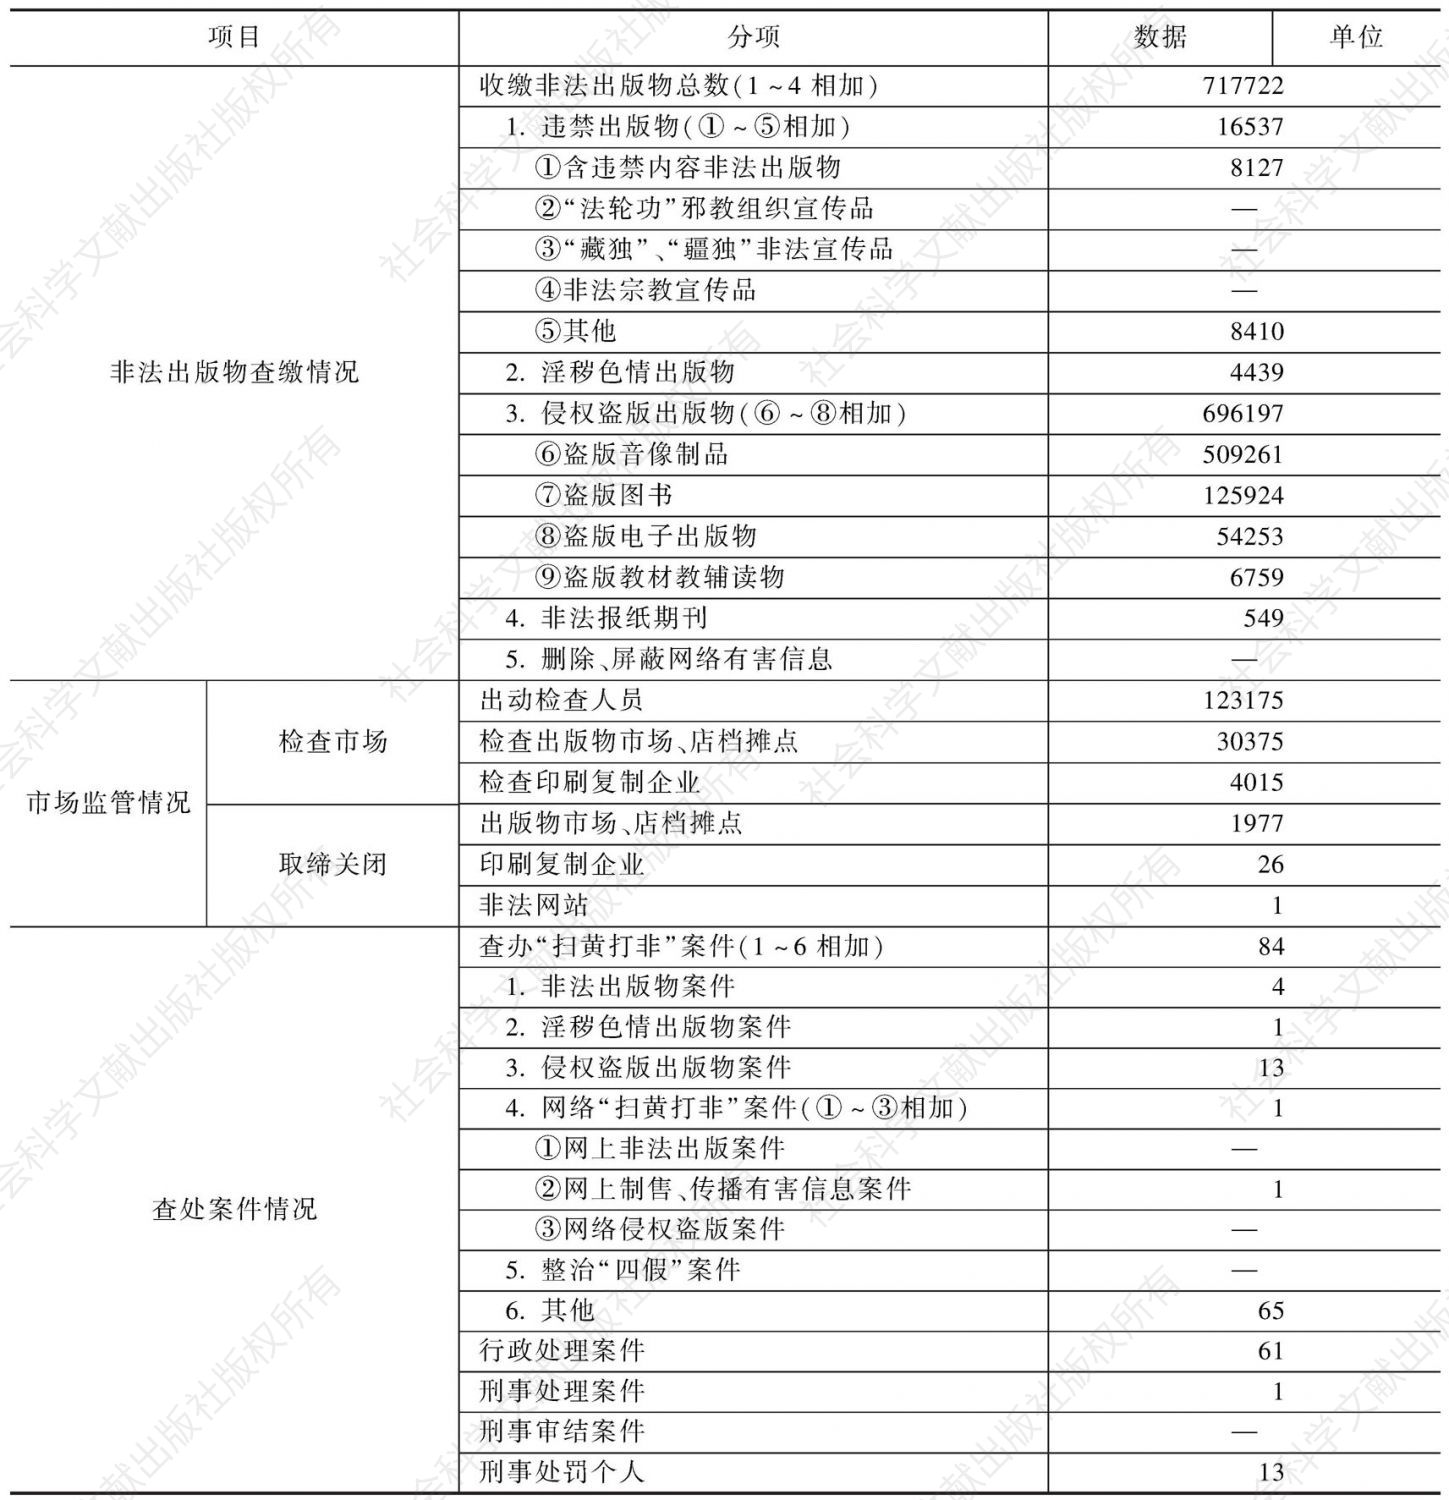 2010年北京市“扫黄打非”工作成果统计表